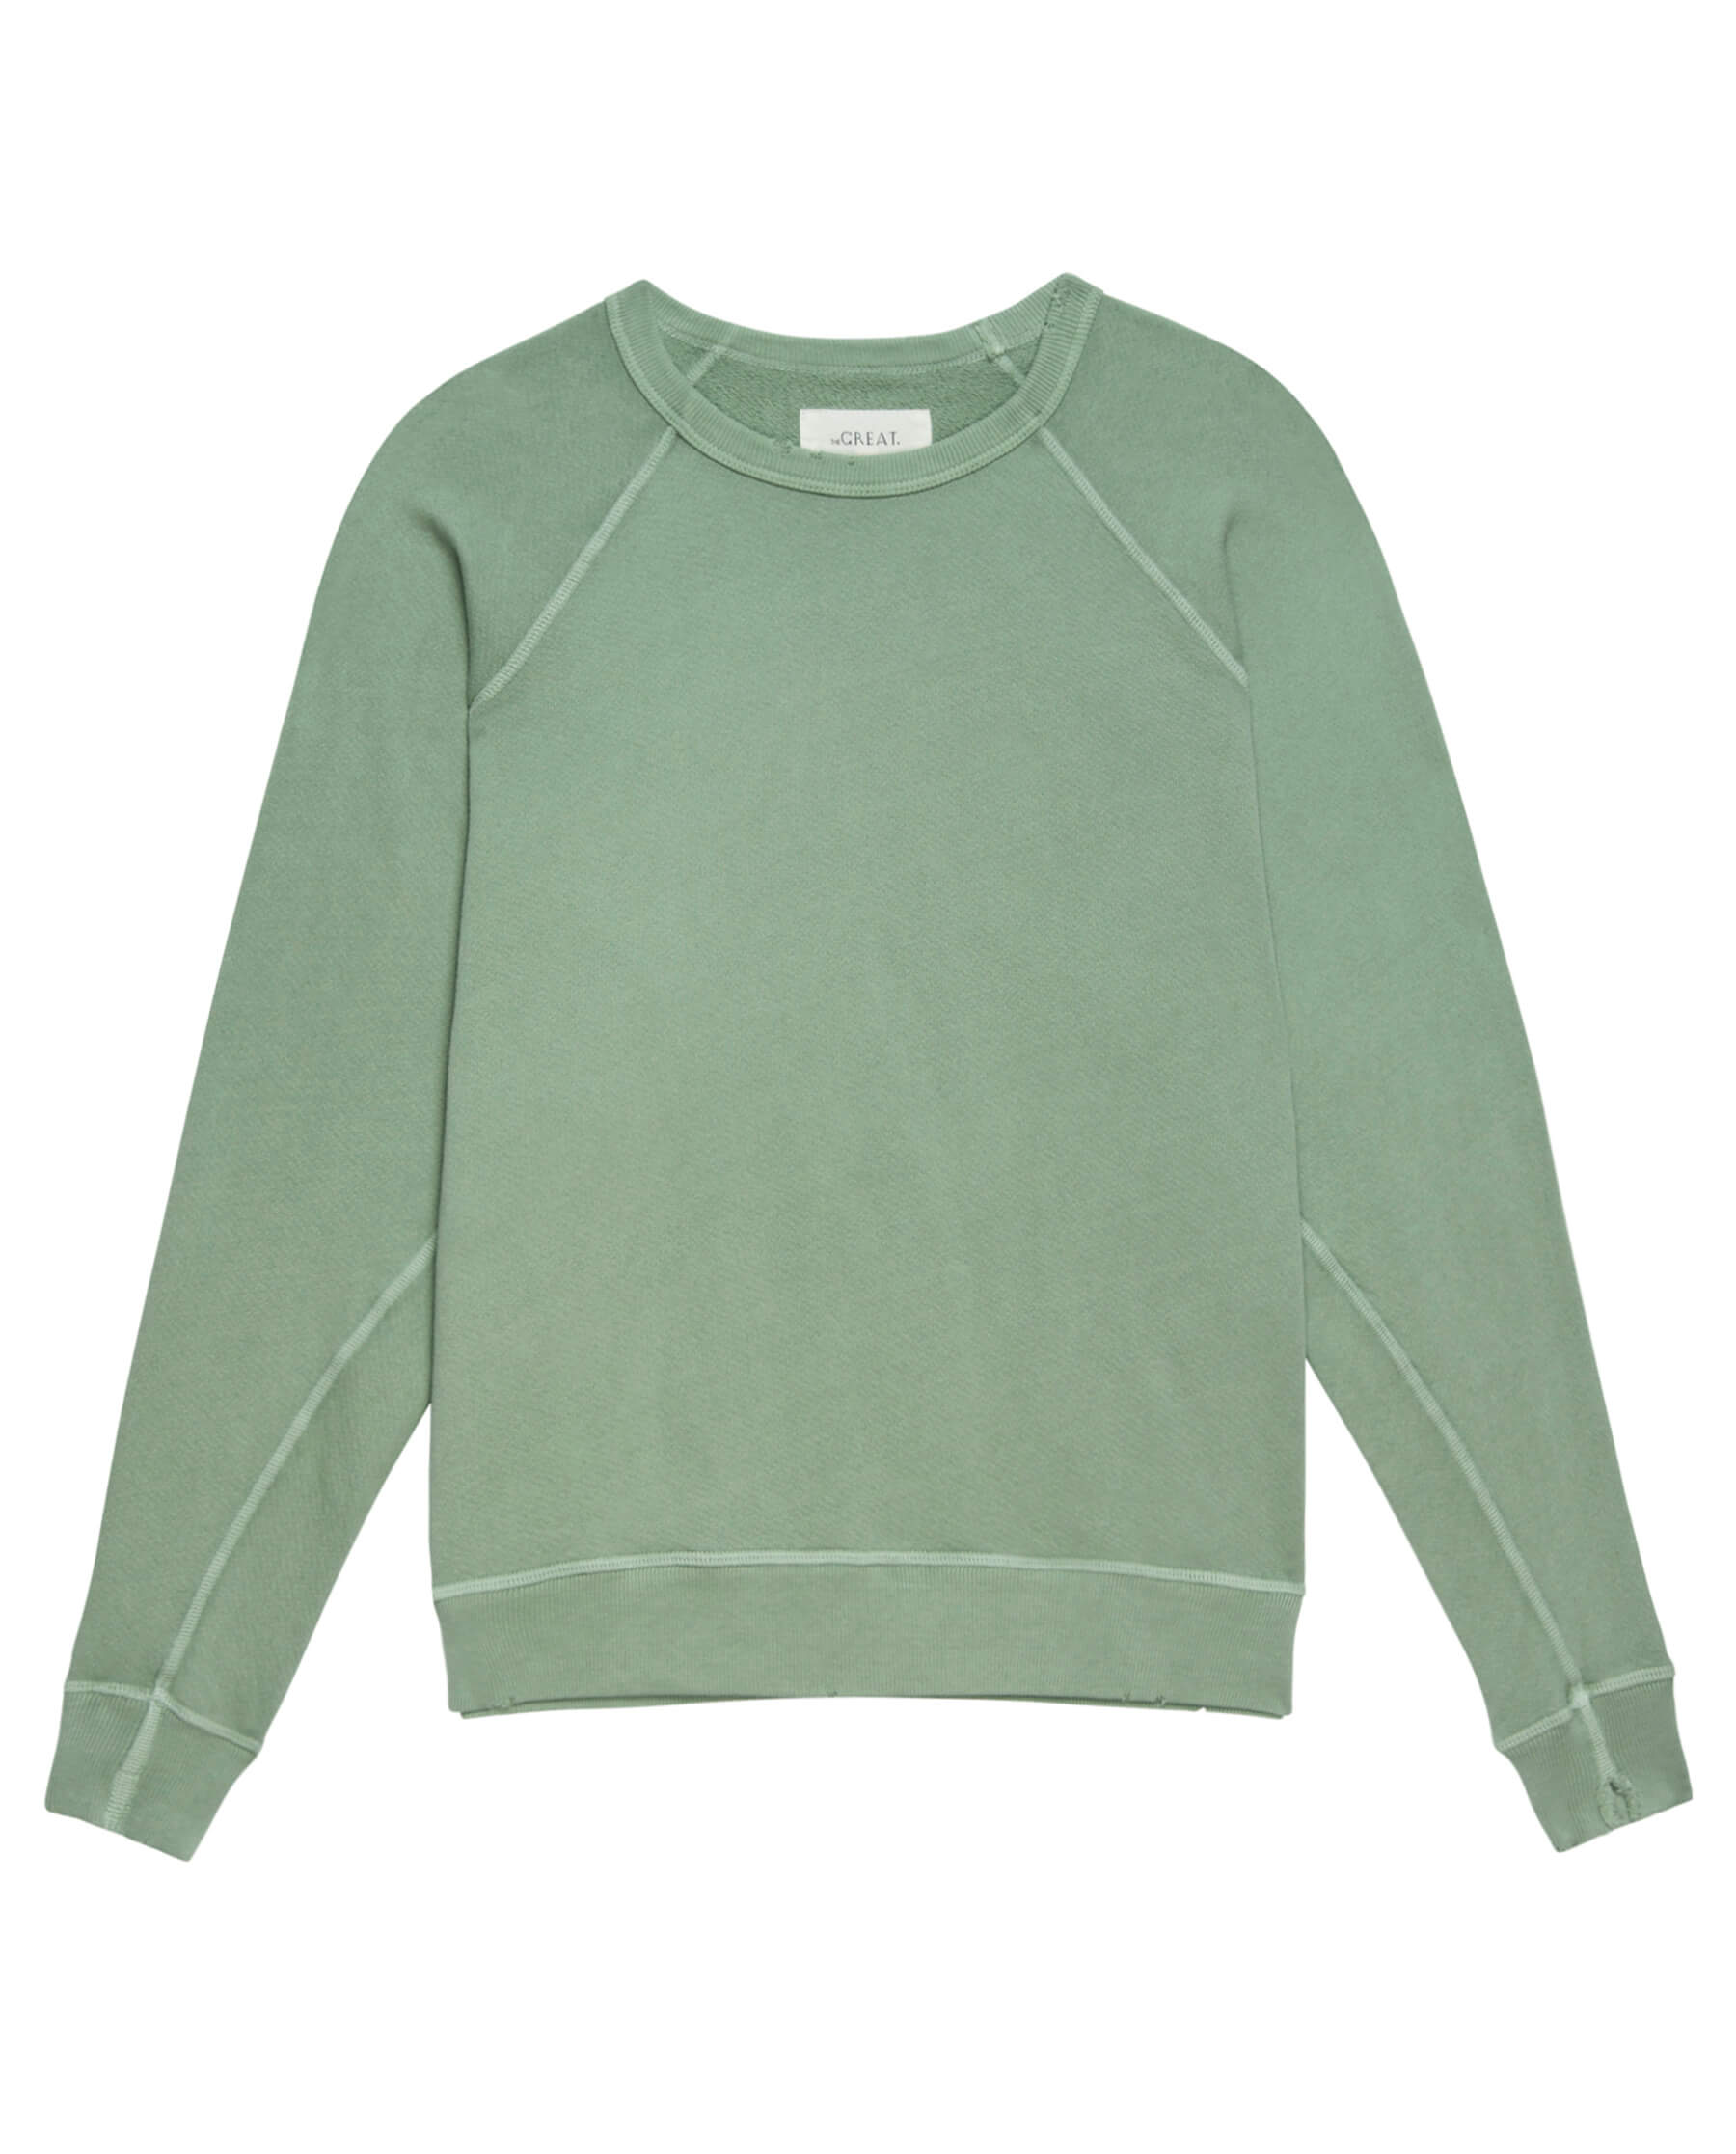 The College Sweatshirt. Solid -- Pistachio